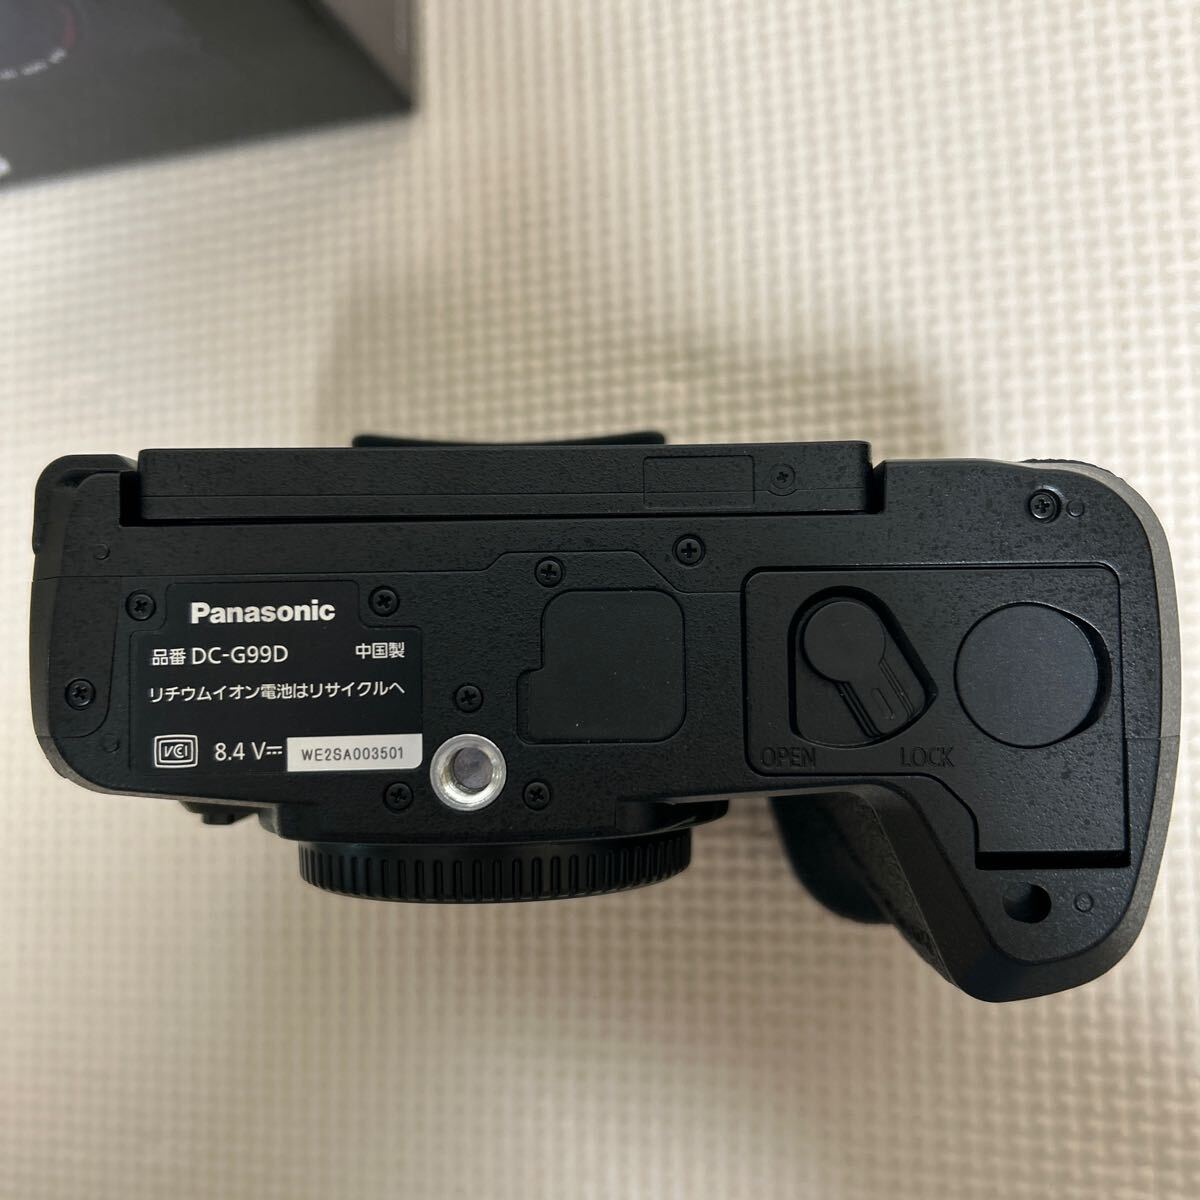 ② 美品 展示品 保証1年付 パナソニック Panasonic LUMIX G99D ミラーレス一眼カメラ ブラック DC-G99D-K [ボディ単体] レンズ一式欠品_画像5